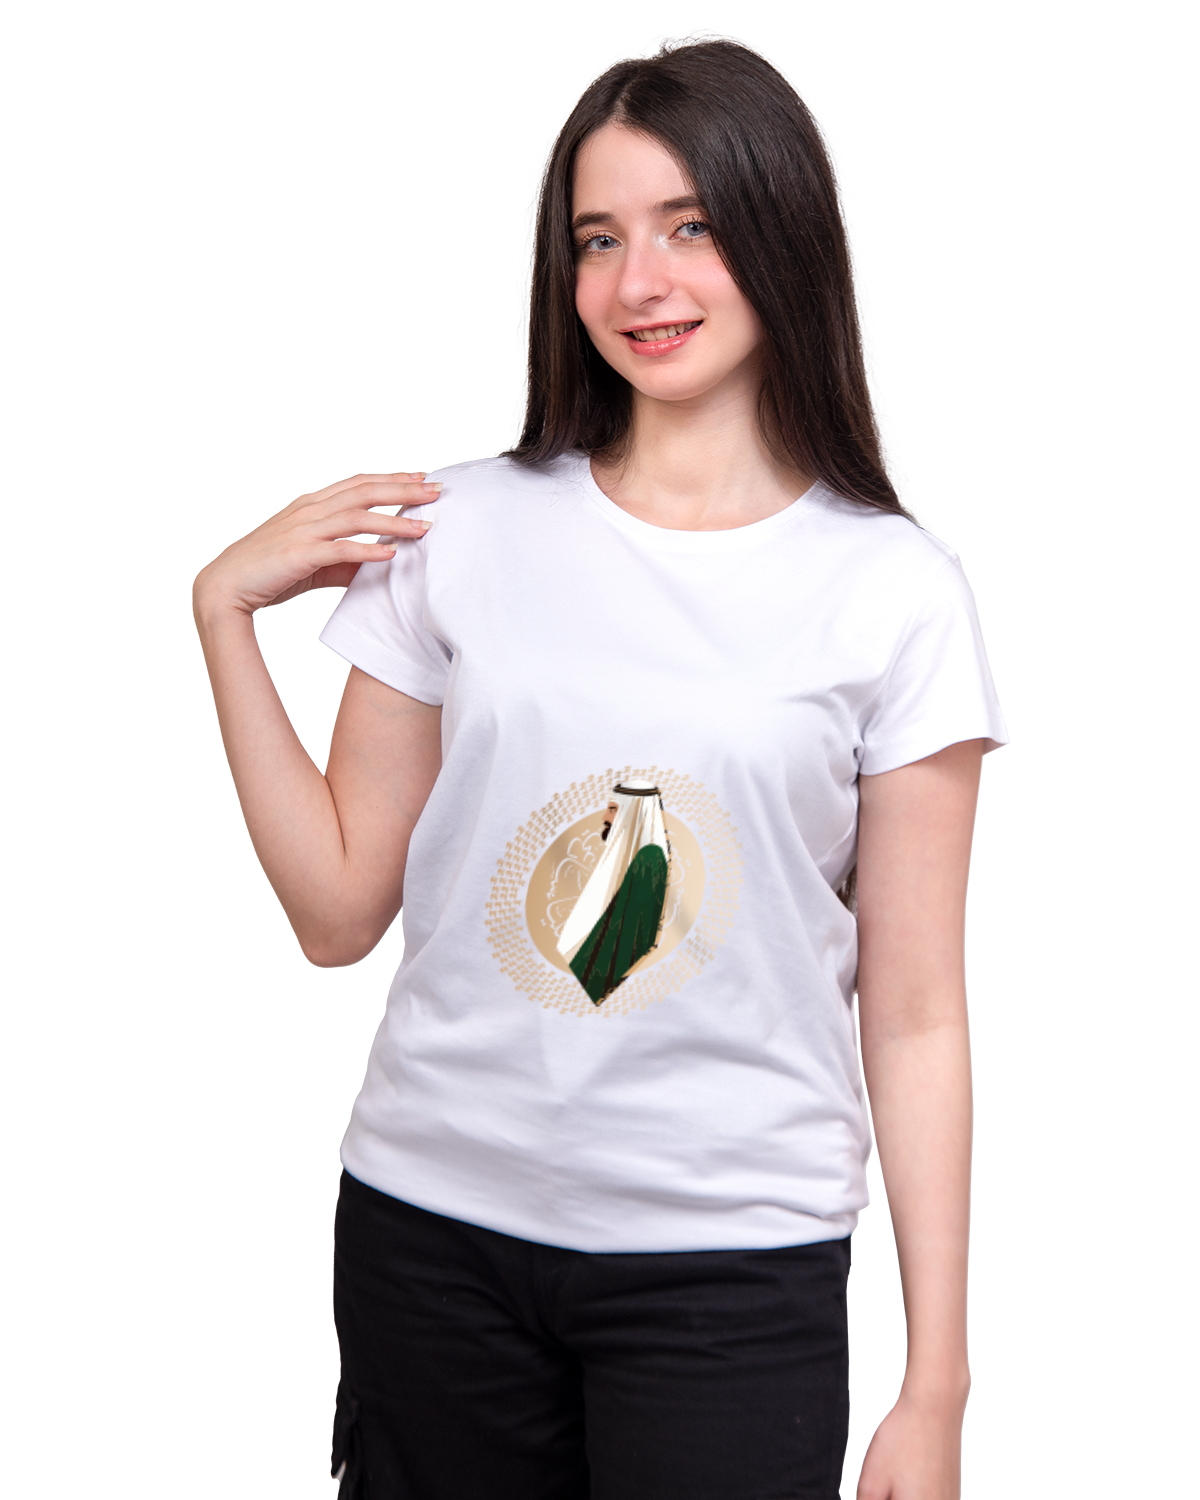 Women's Foundation Day T-shirt (Sarei Lilmajd Walealya')